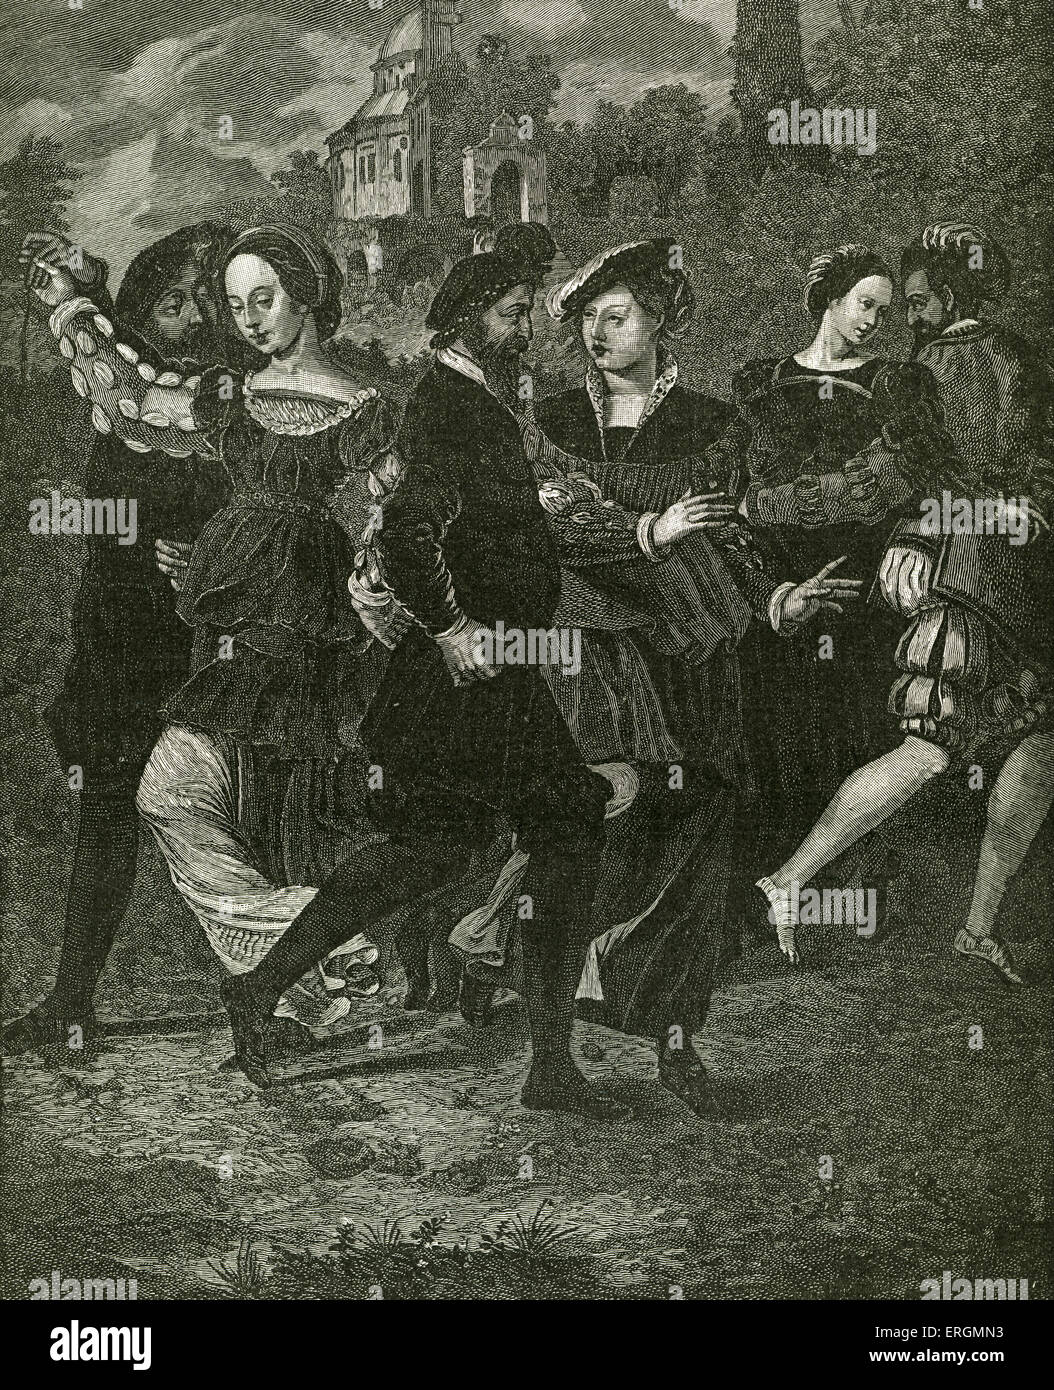 La Danza di immagine da parte di Hans Holbein (1497-1543). Ballerini sono, da sinistra a destra, il re Enrico VIII, Anne Boleyn, Thomas Howard, Foto Stock